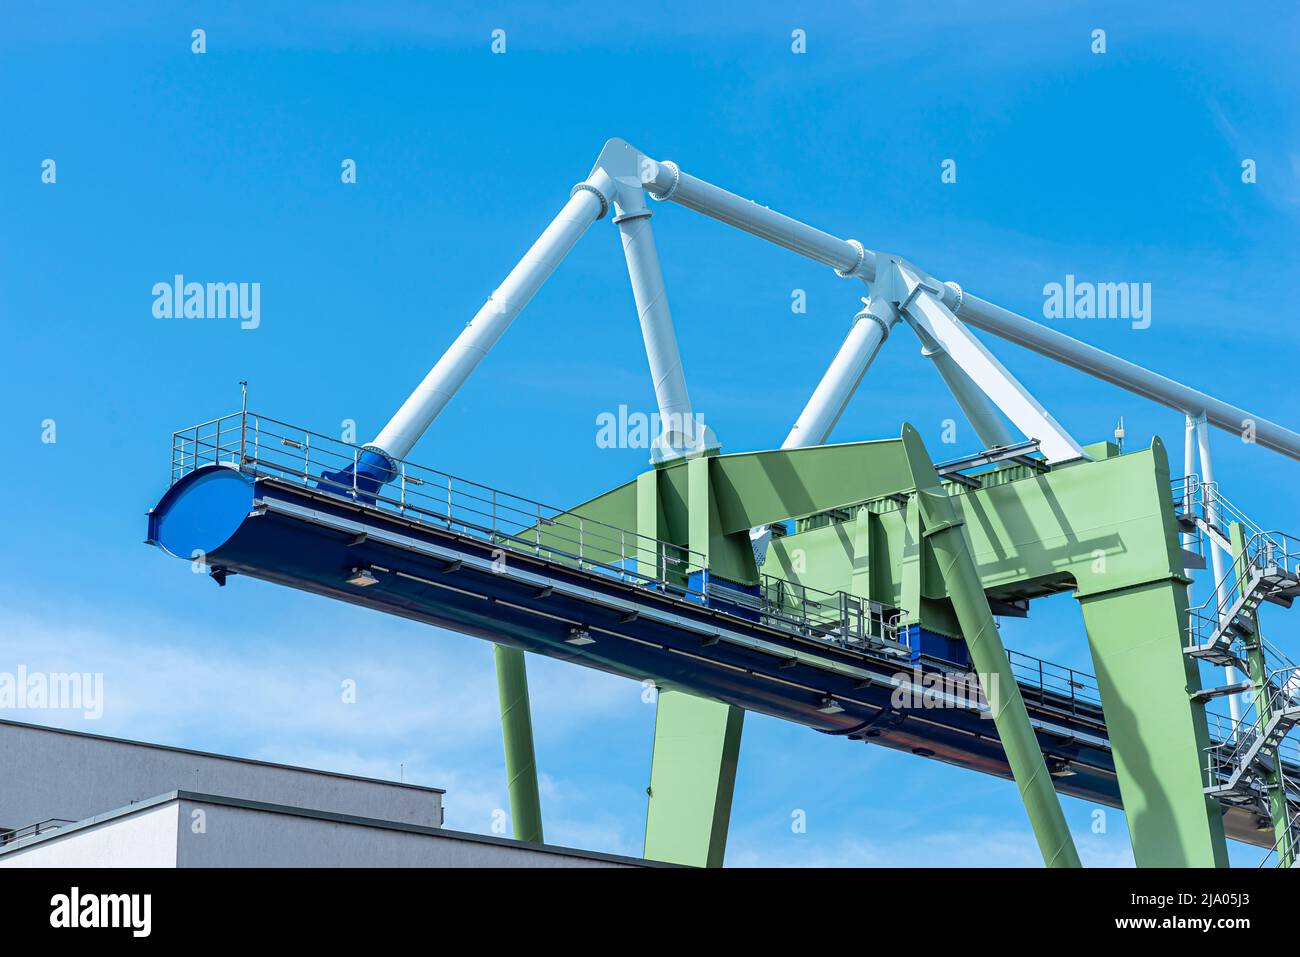 Eine massive Hafenbrücke auf Schienen, die auf dem Umladeplatz stehen, ist ein riesiges Stahltraversen sichtbar. Stockfoto